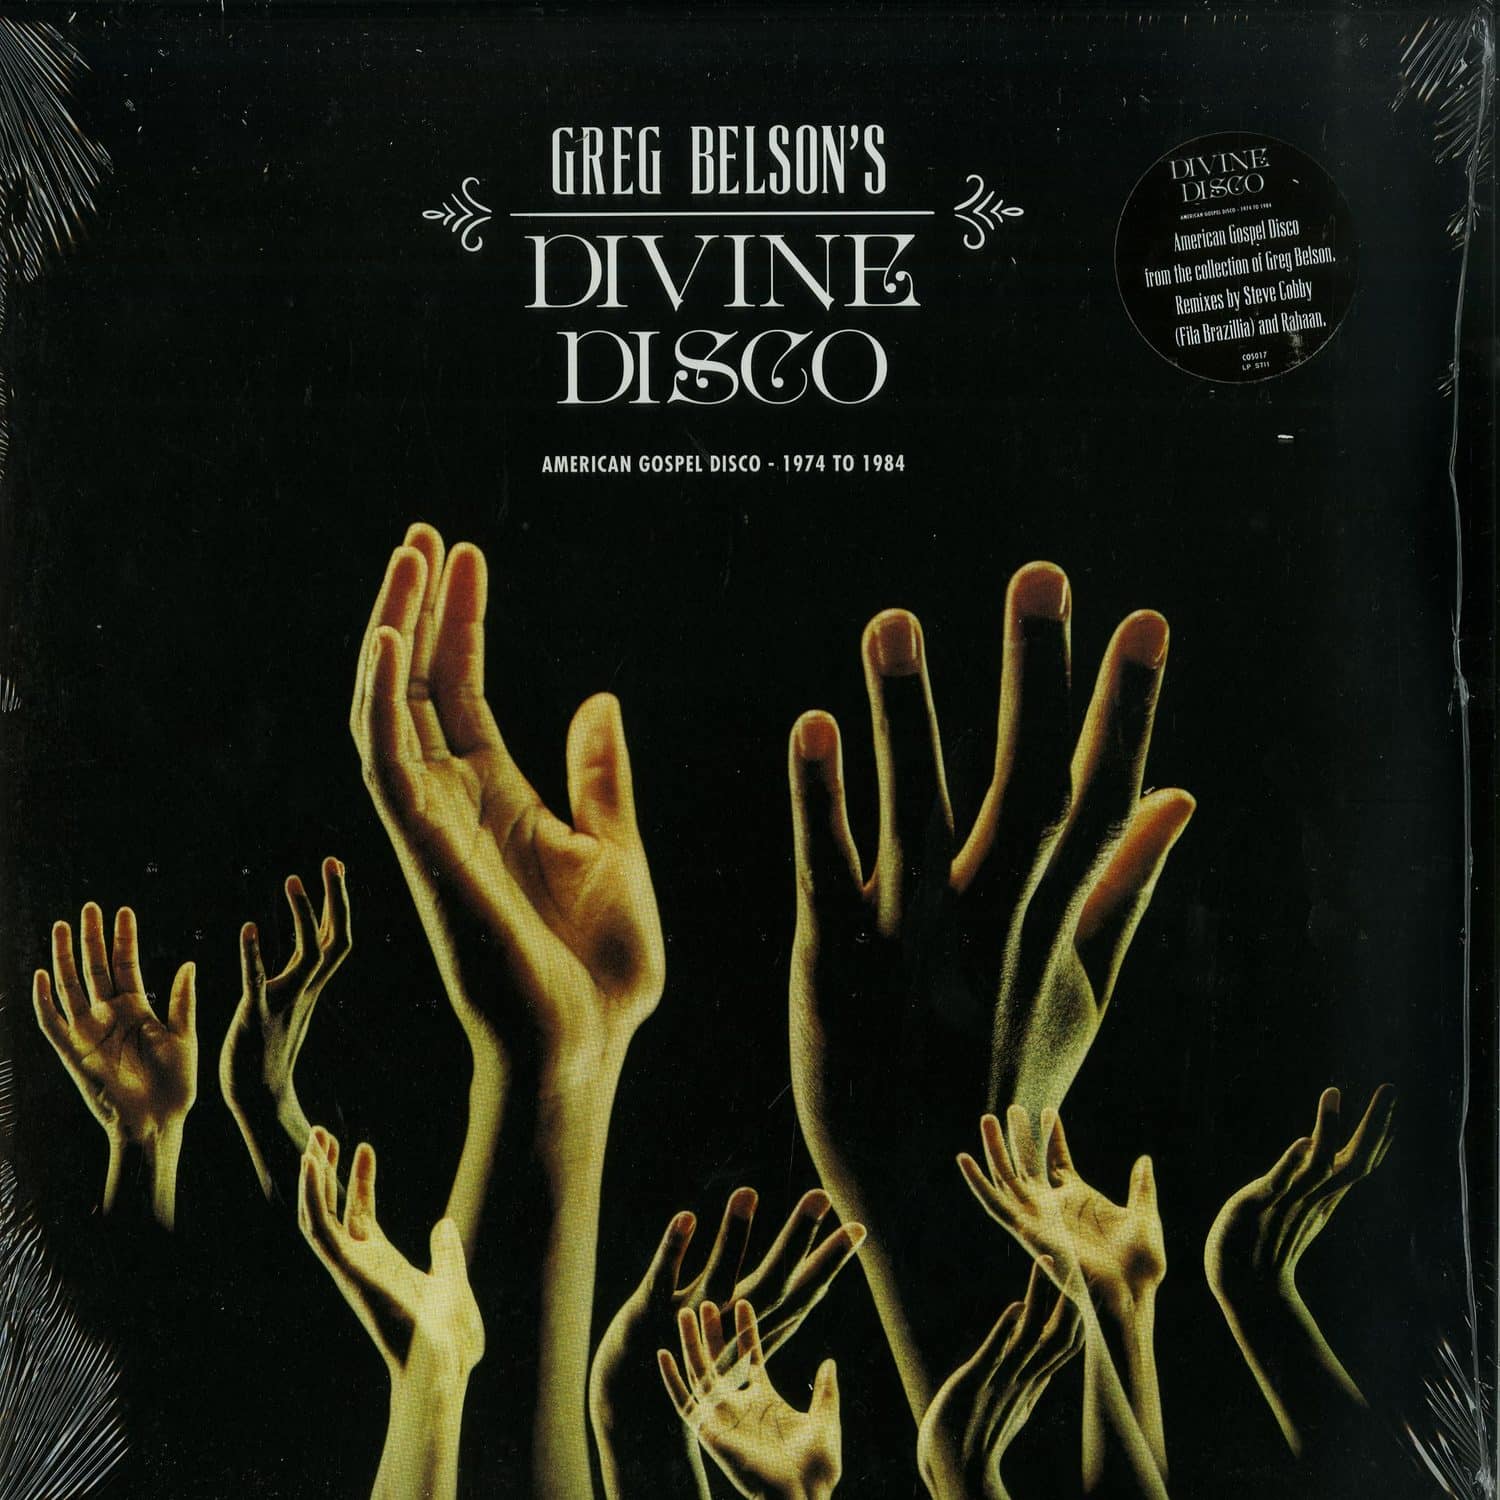 Greg Belsons Divine Disco - AMERICAN GOSPEL DISCO 